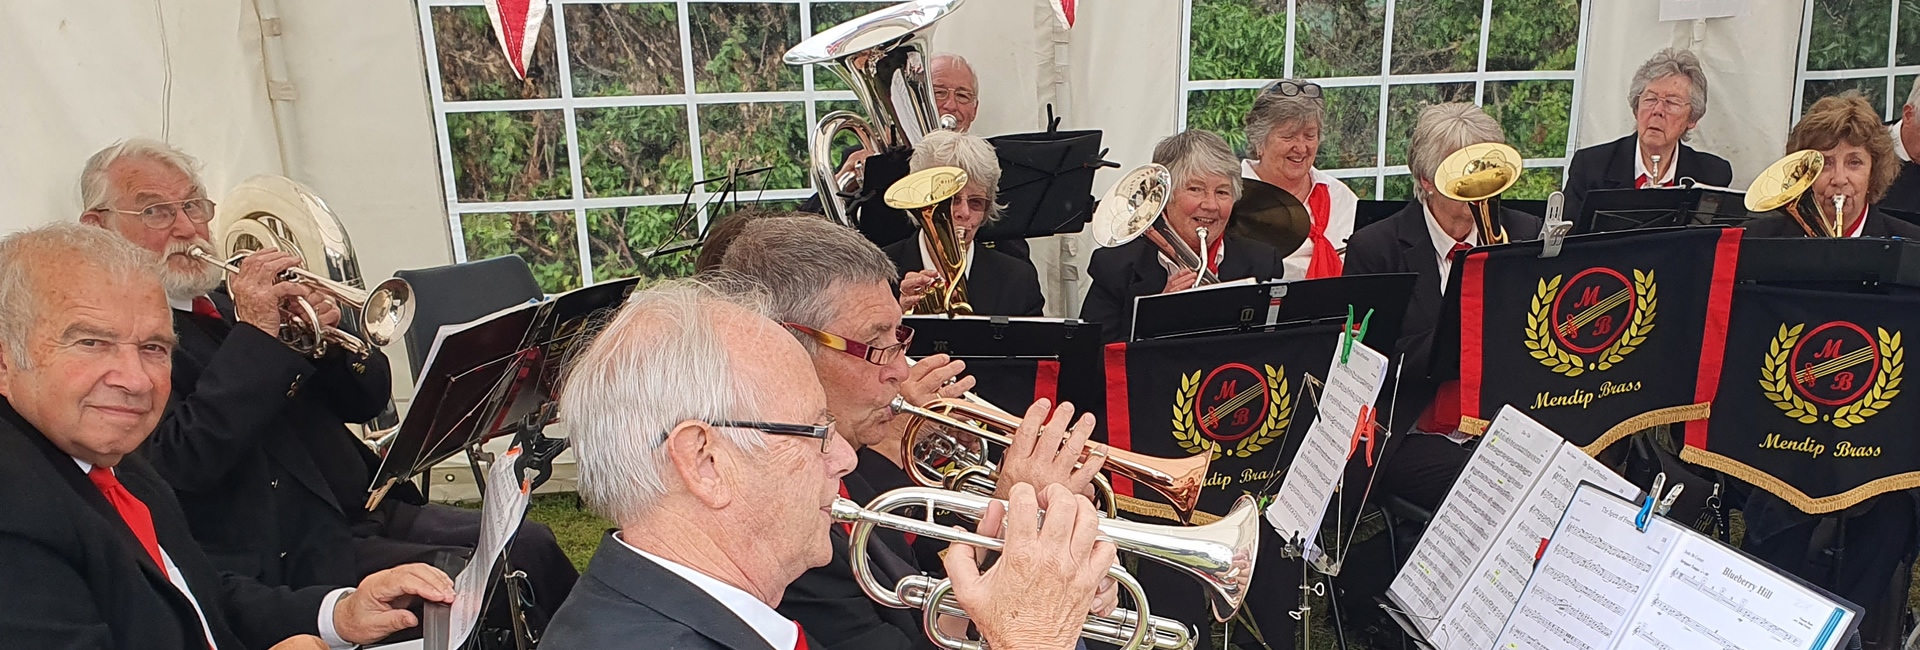 Mendip Brass Band in Henton